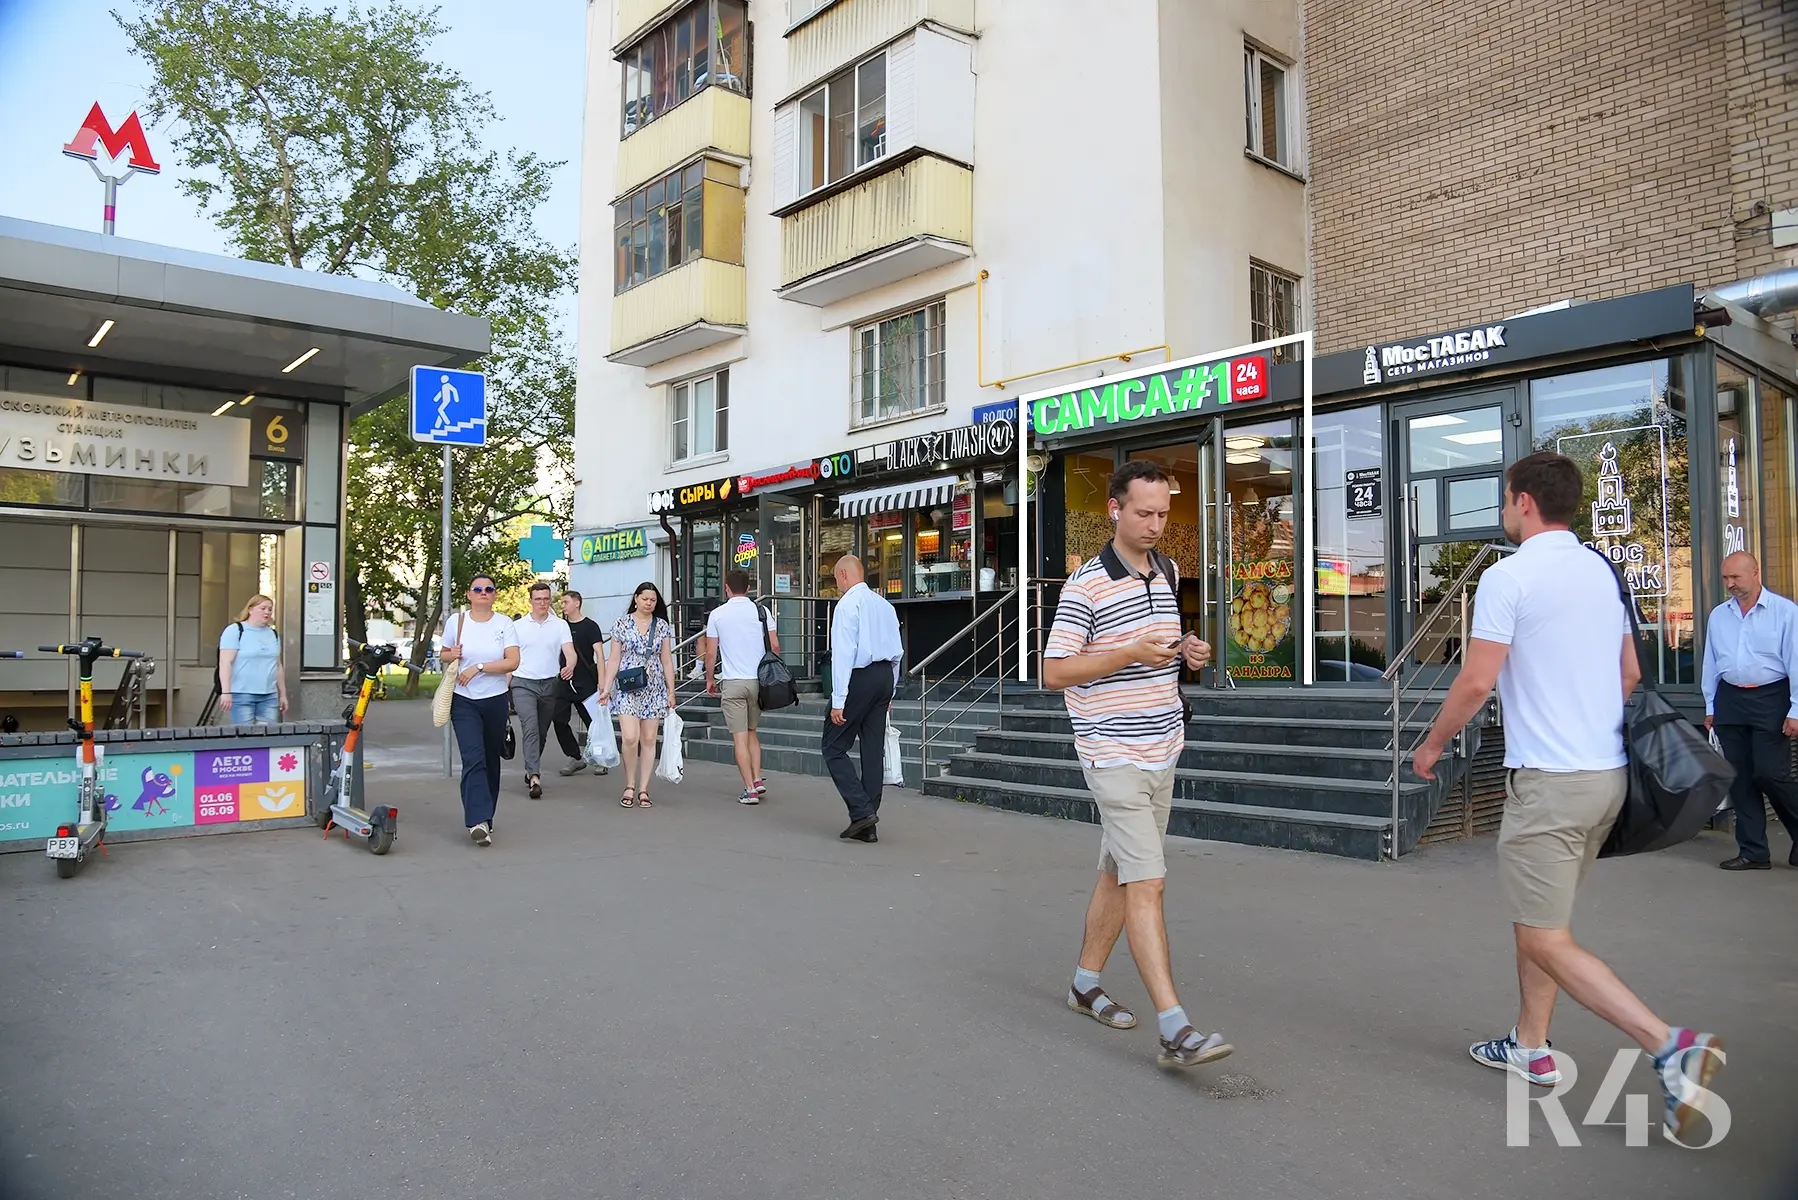 Продажа готового арендного бизнеса площадью 28.2 м2 в Москве: Волгоградский проспект, 80/2к1 R4S | Realty4Sale